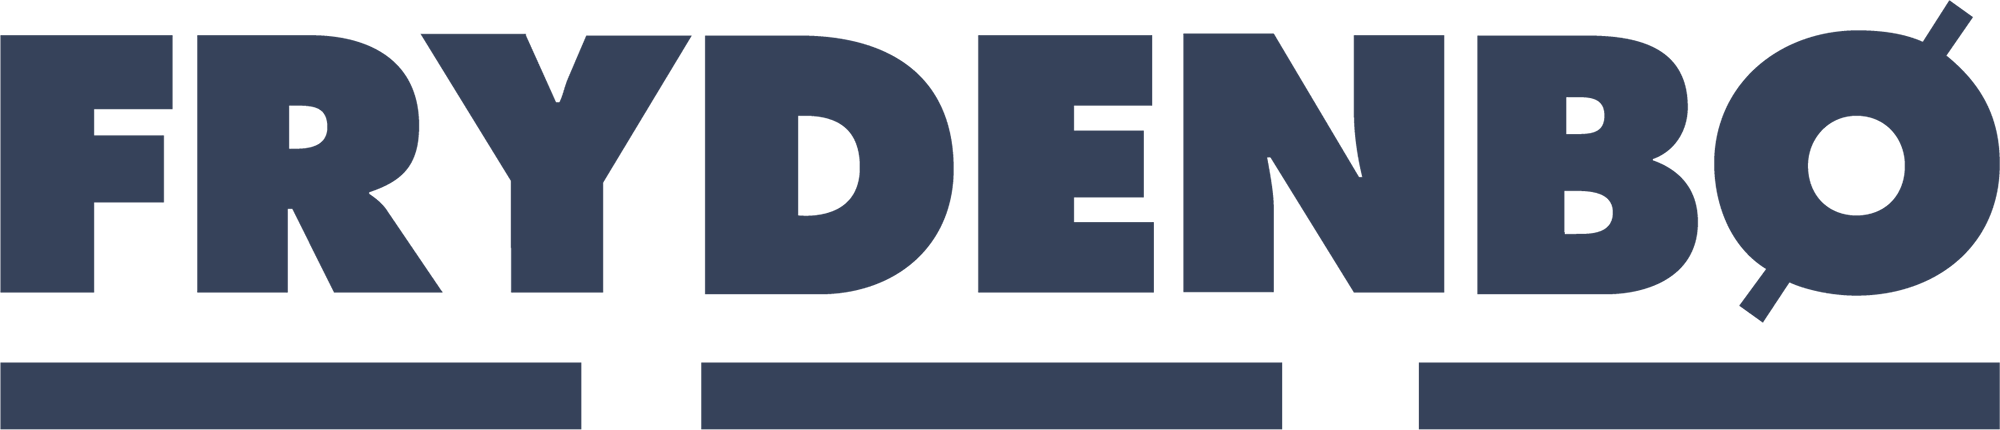 Frydenbø logo